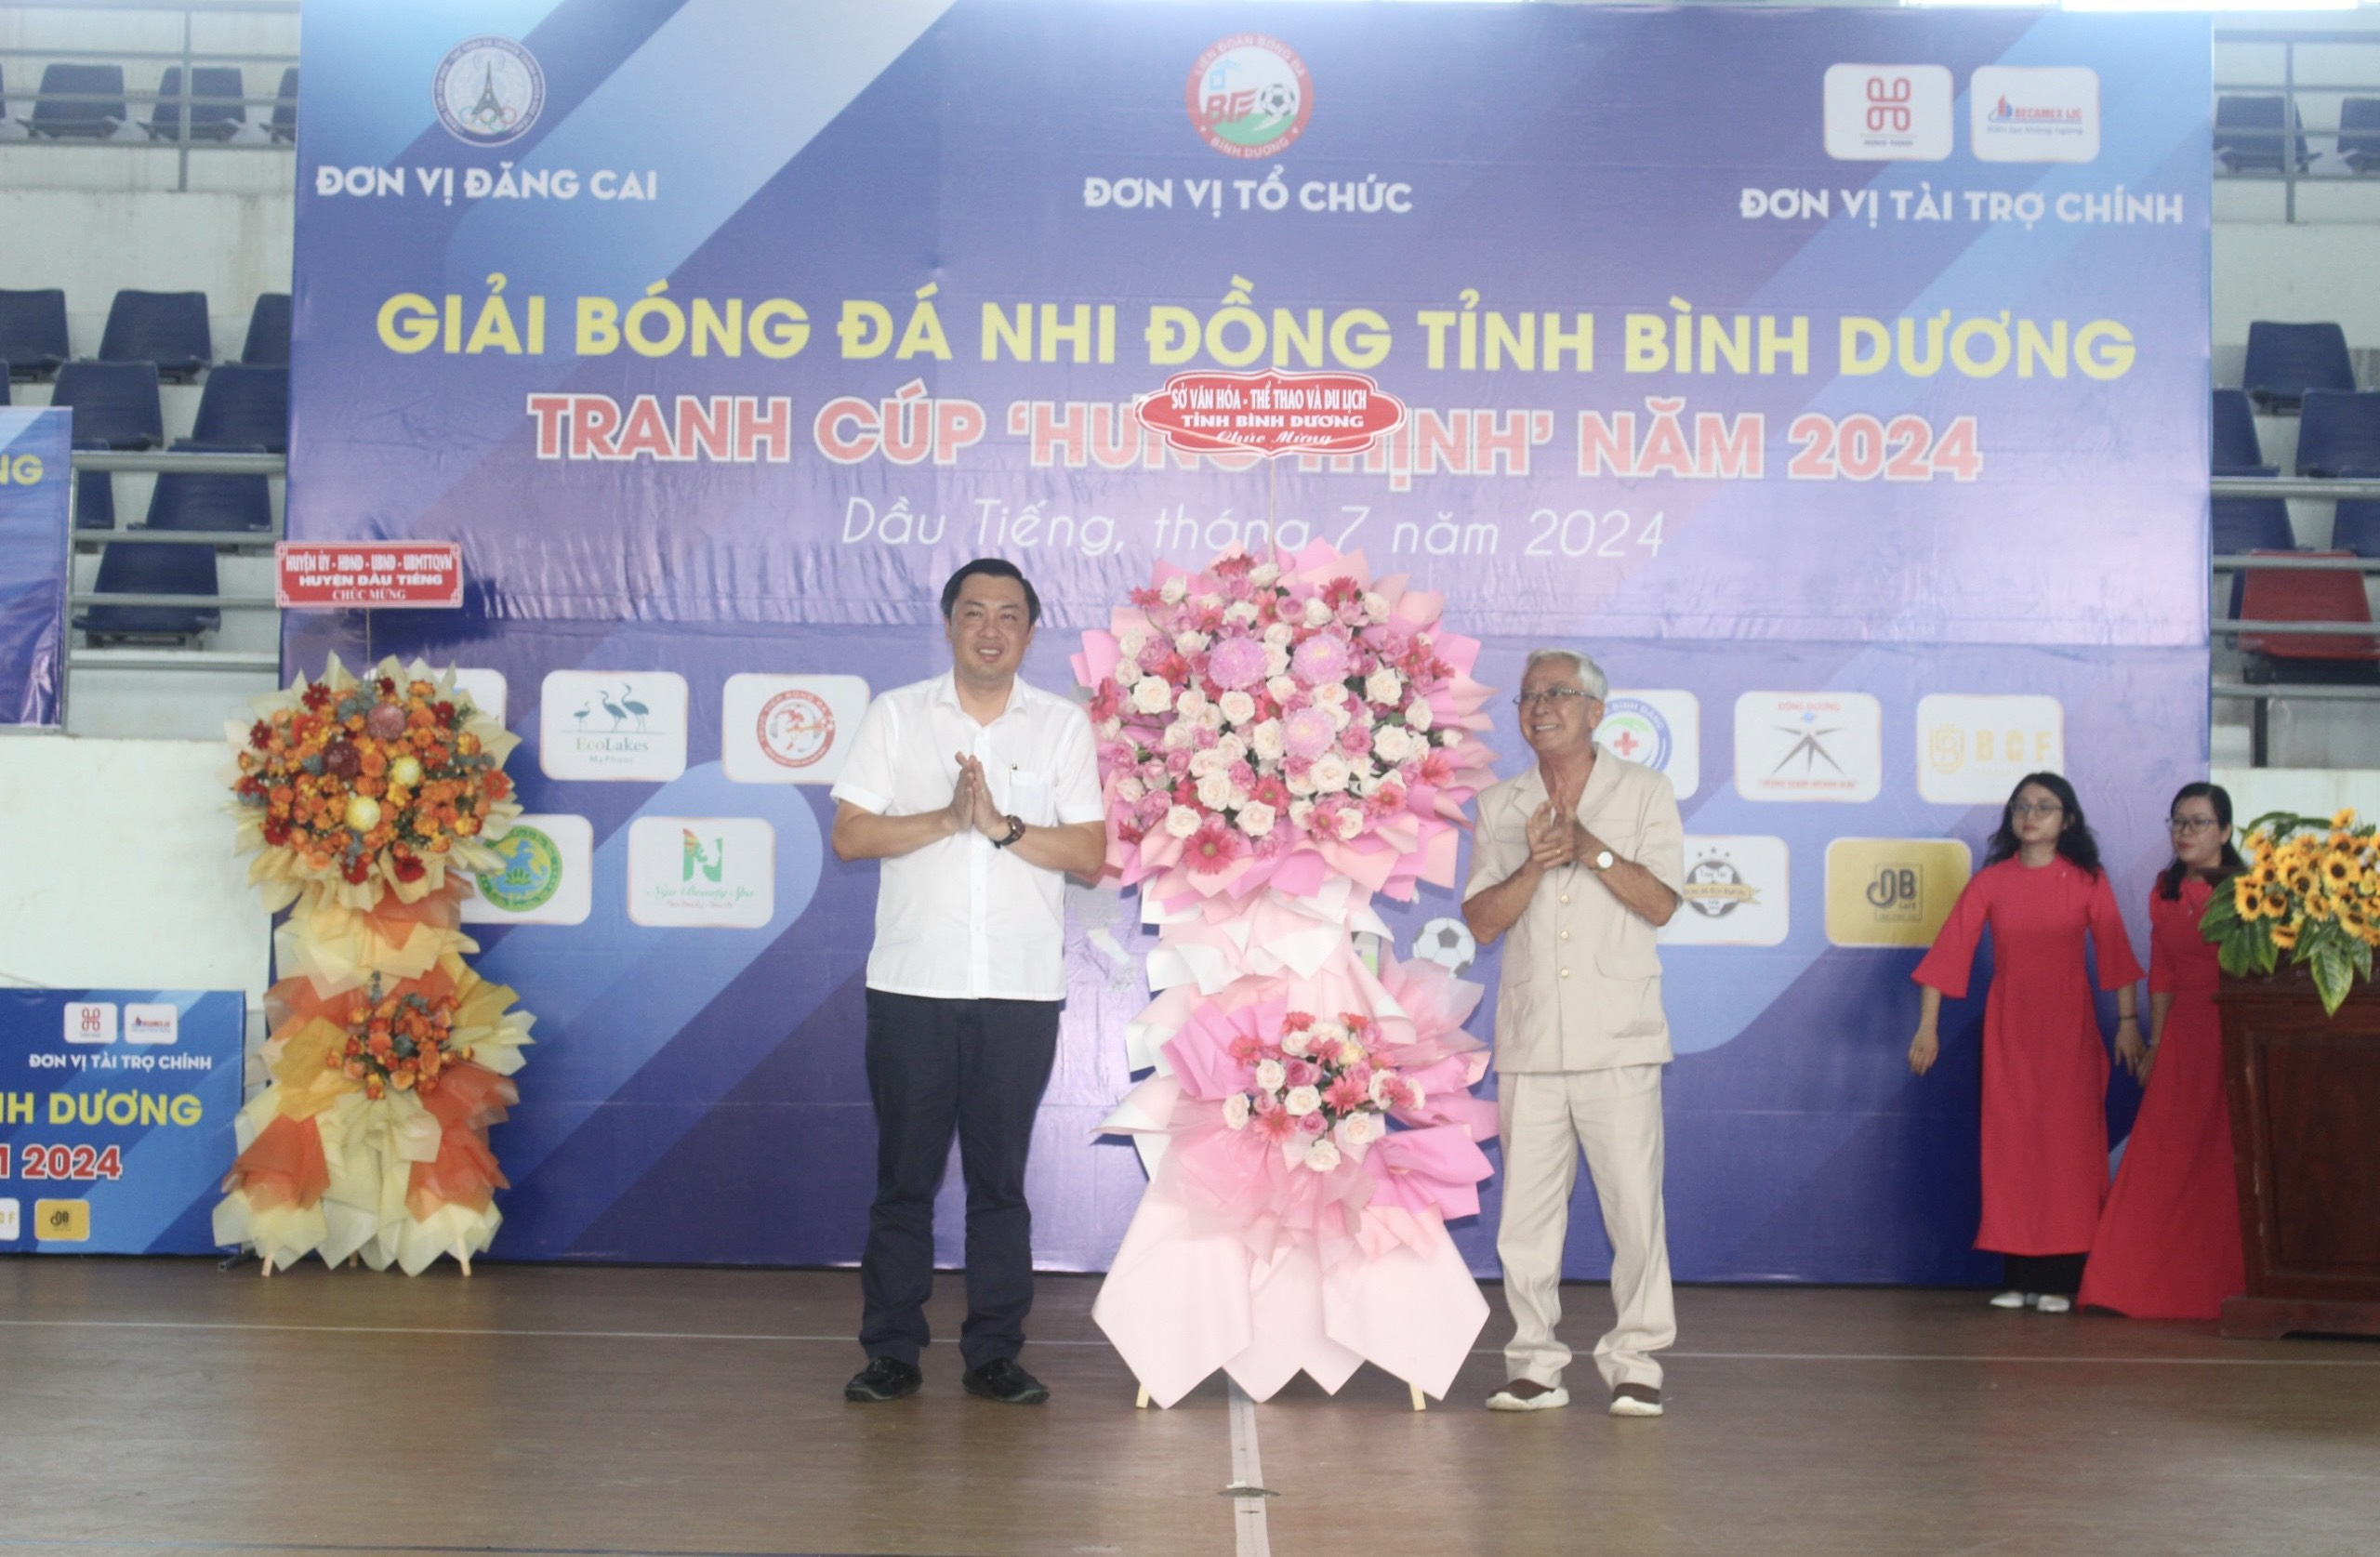 Ông Cao Văn Chóng – PGĐ Sở Văn hoá, Thể thao và Du lịch tỉnh trao lẵng hoa chúc mừng cho ông Vũ Đức Thành - Chủ tịch Liên đoàn bóng đá Bình Dương, Trưởng BTC giải